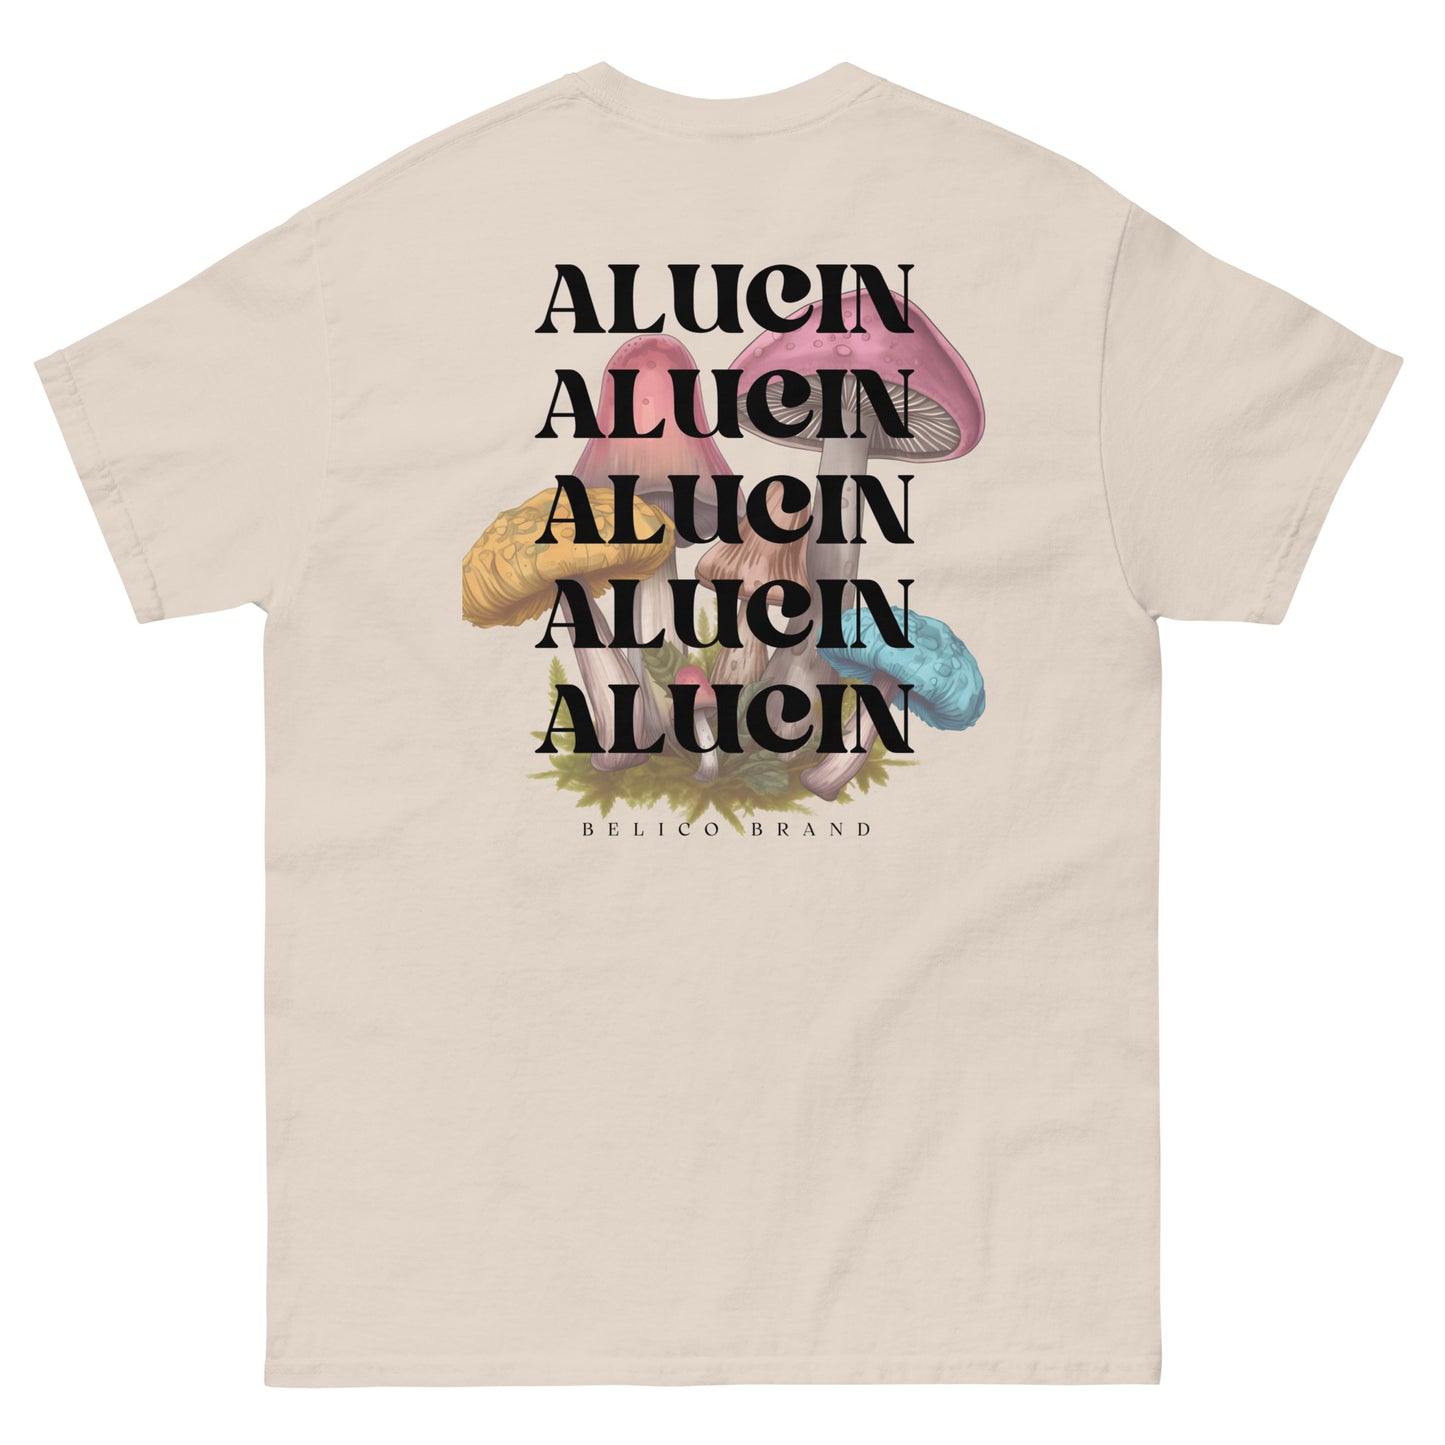 El Alucin T-Shirt